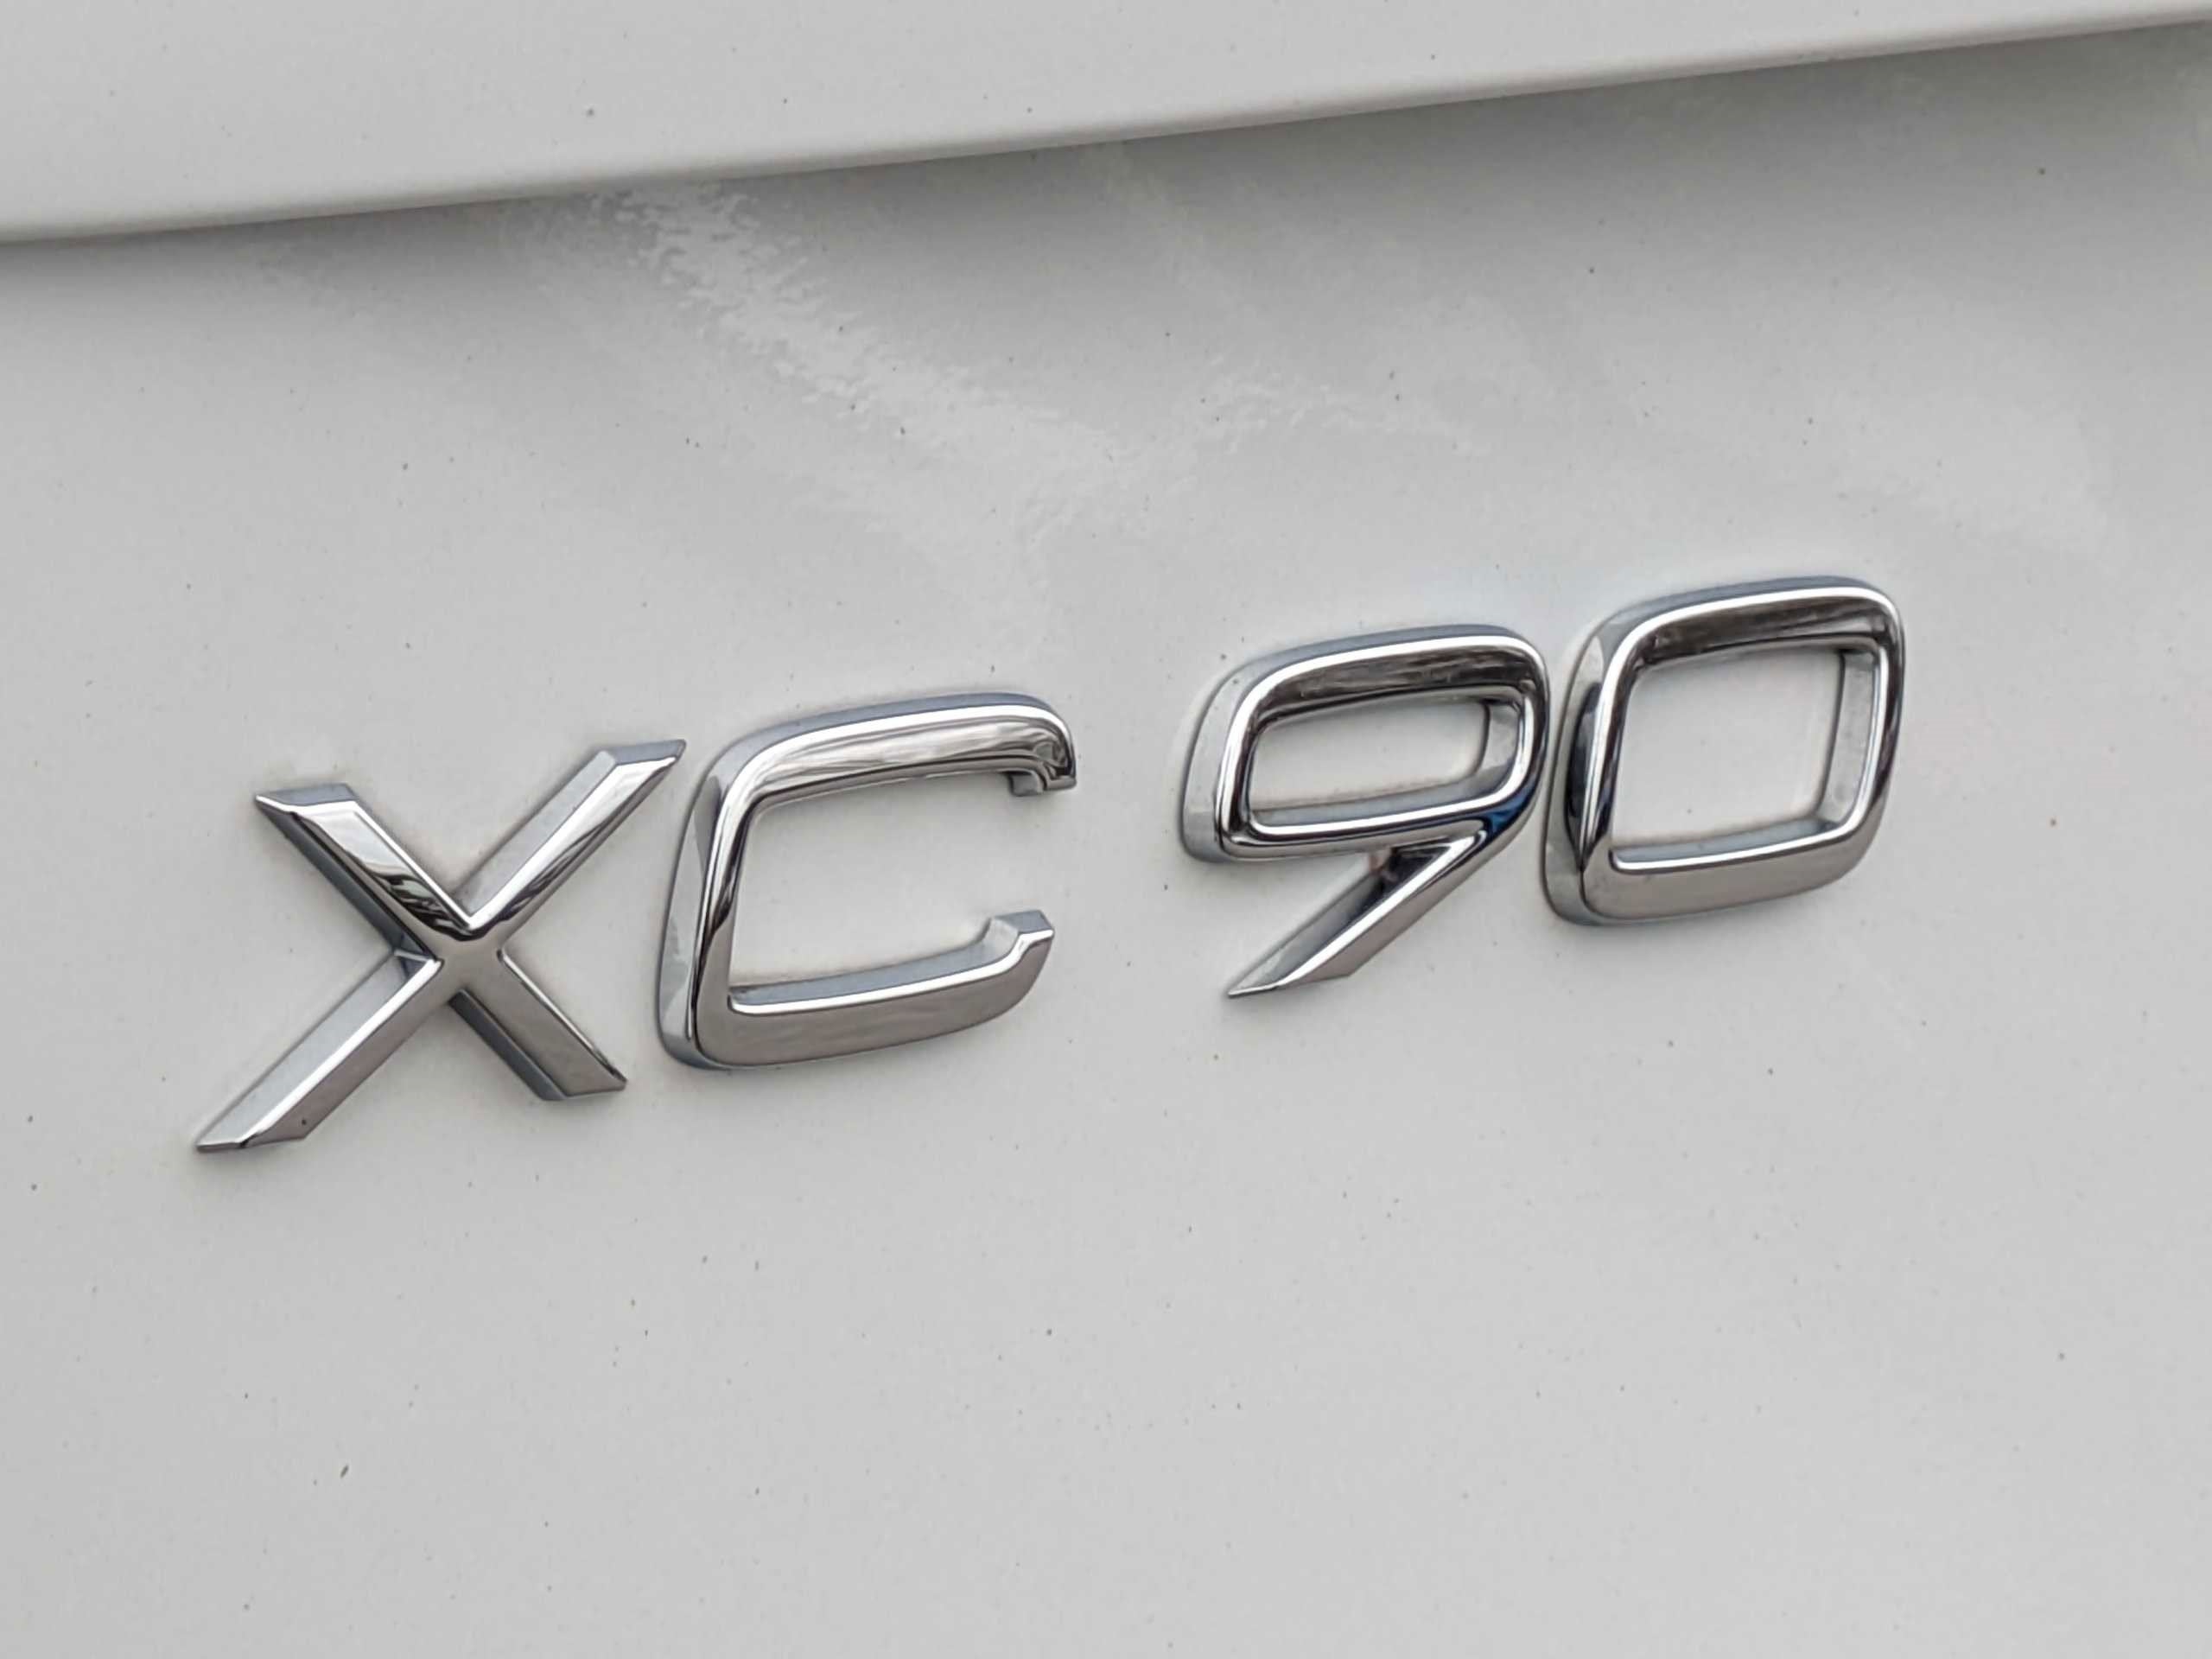 2020 Volvo XC90 T6 AWD Momentum 7 Passenger